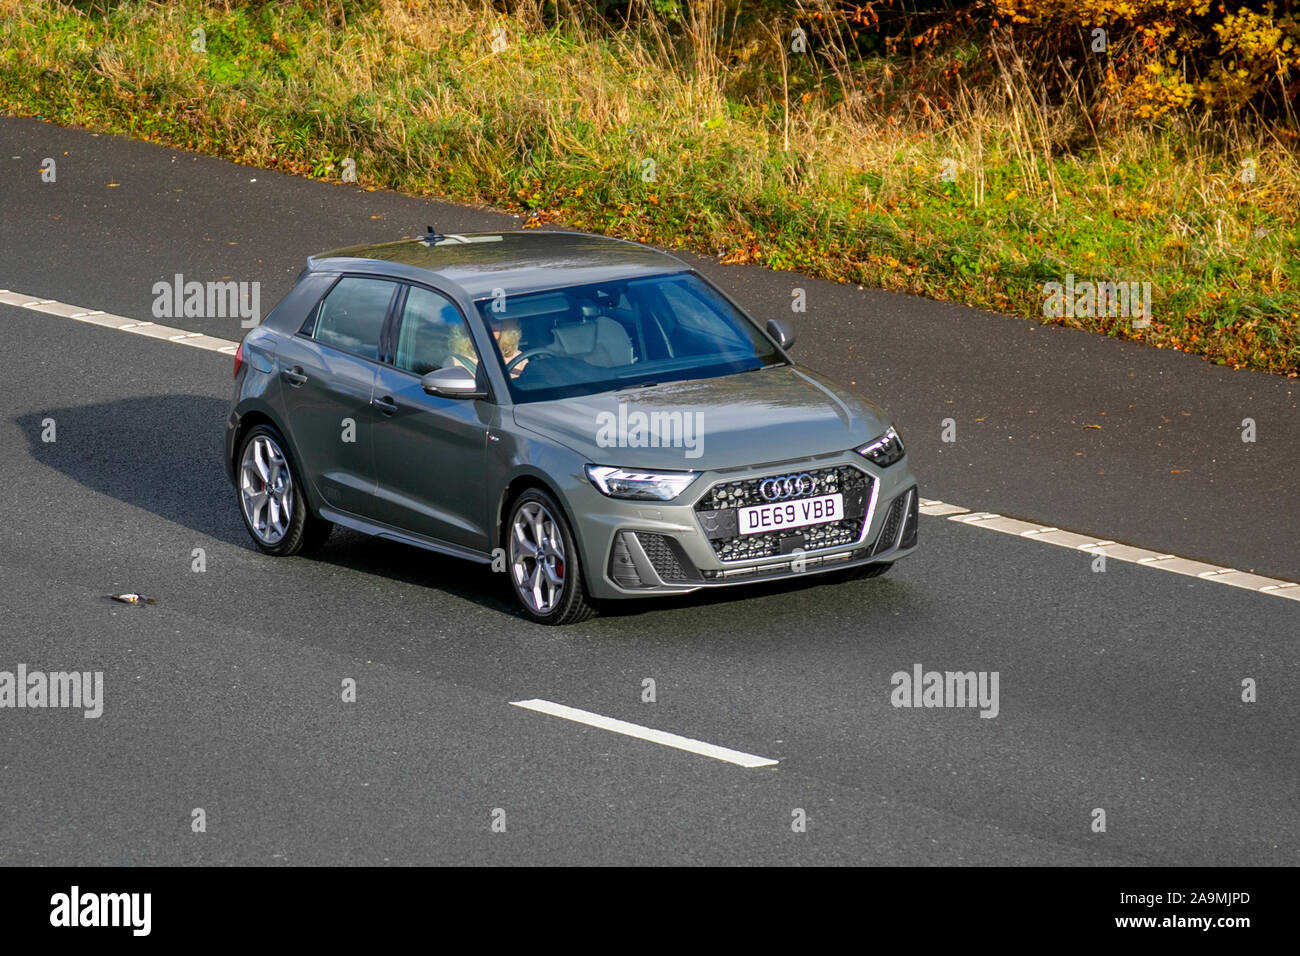 Audi A1 (A1 2); Regno Unito il traffico veicolare, trasporti, veicoli moderni, carrozze salone, sud-legato sulla corsia di 3 M61 Autostrada autostrada. Foto Stock